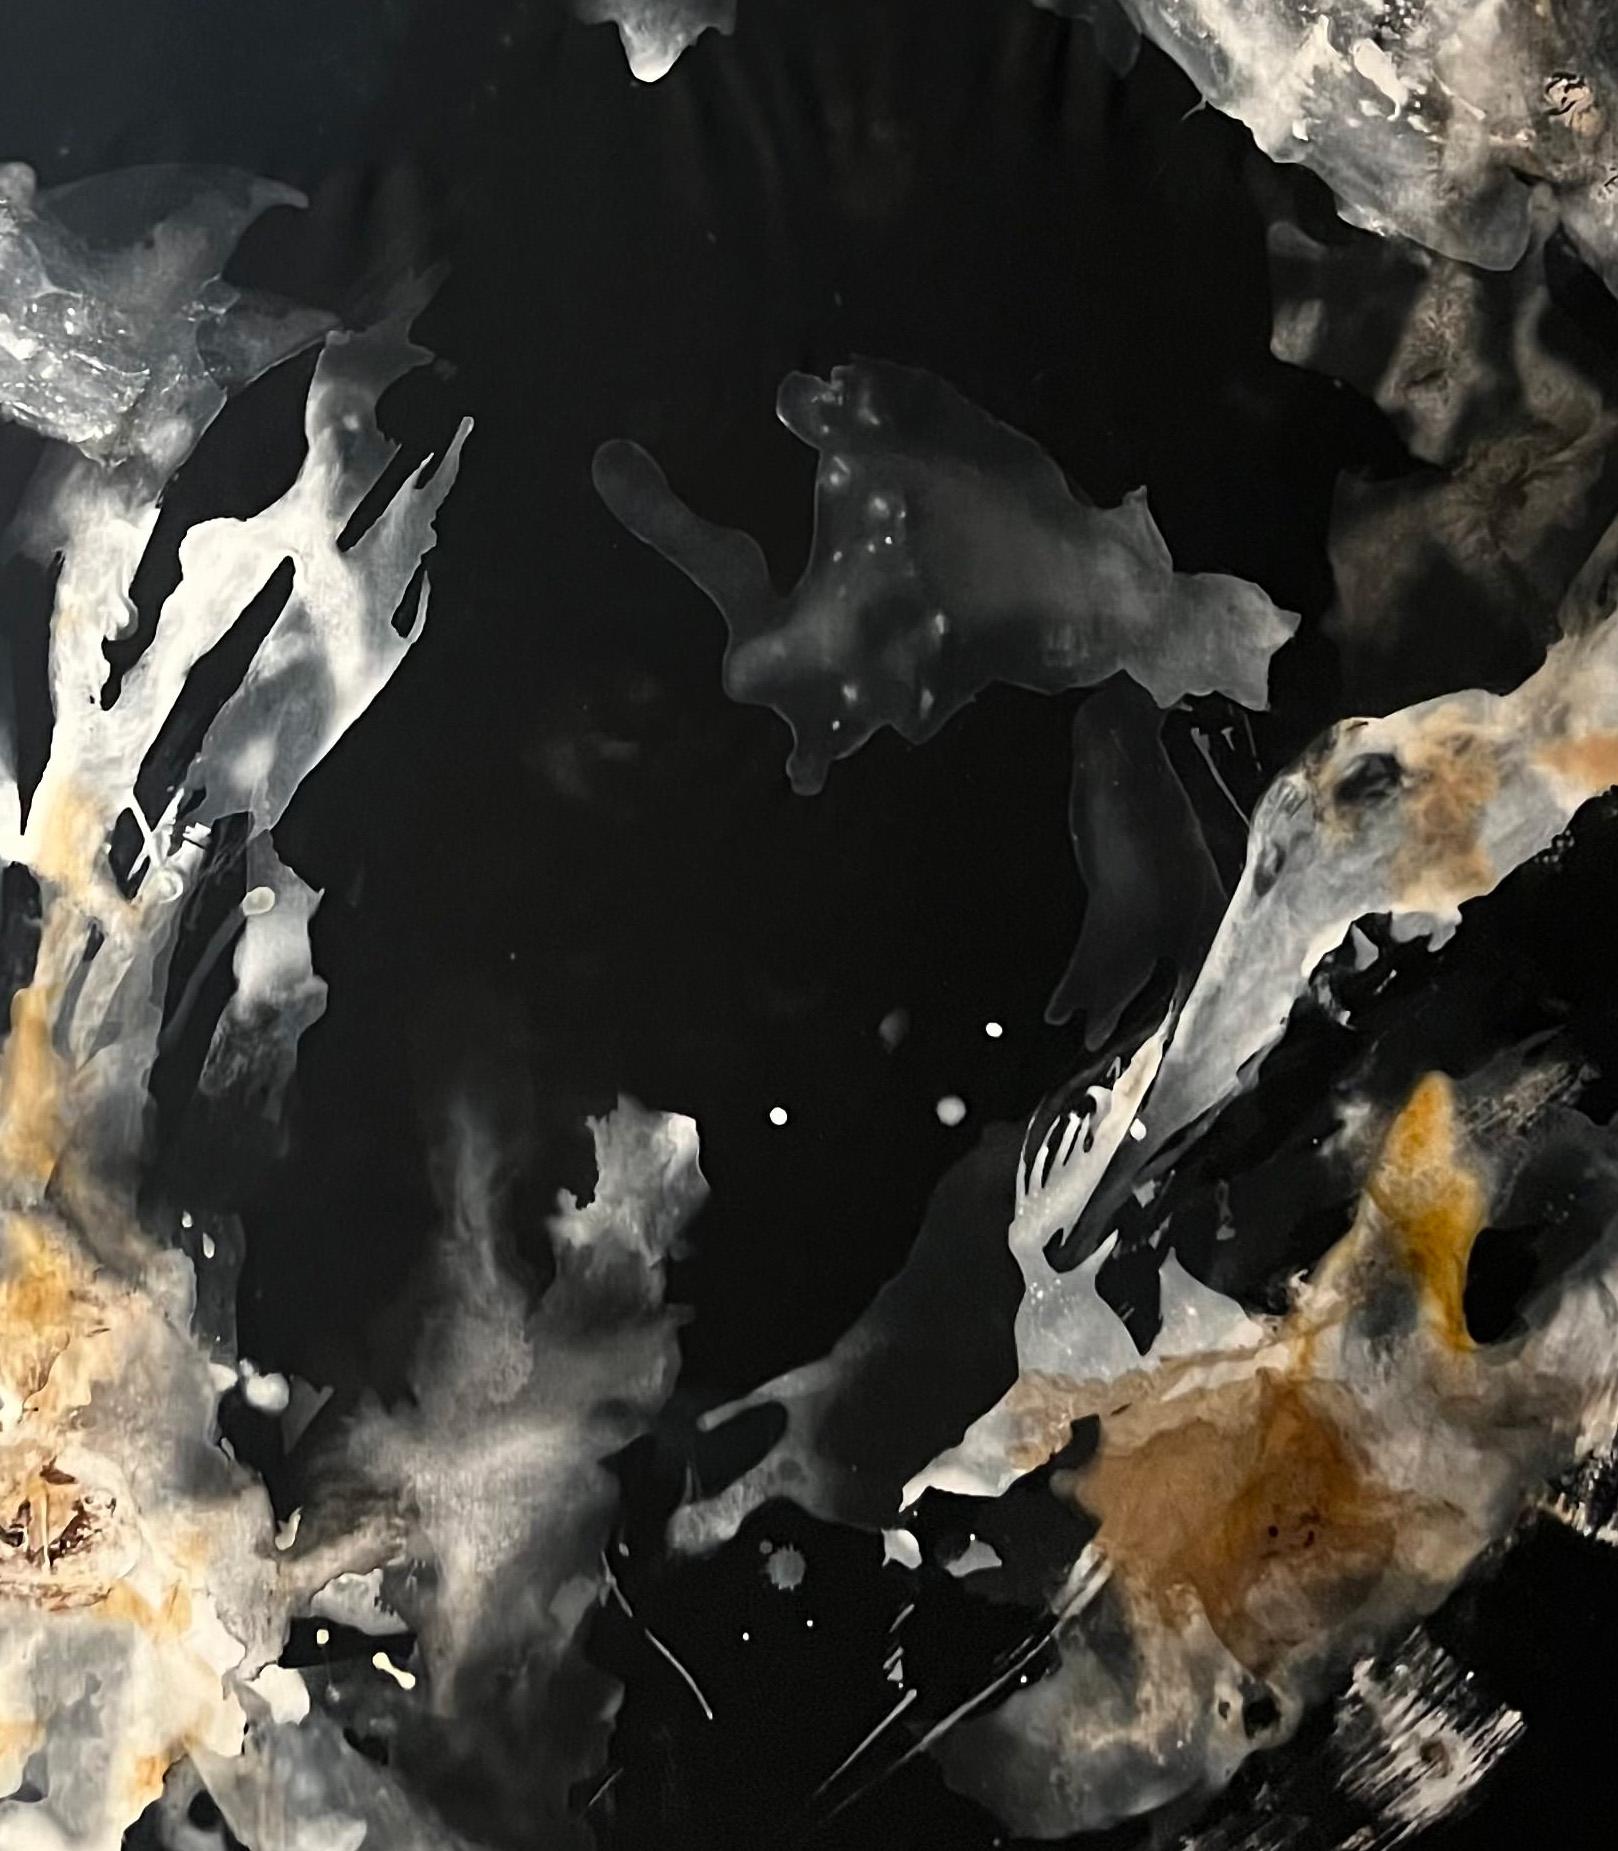 Série Whiting n2, 2023 par Rosario Briones
De la série Whiting 
Technique mixte : pigments naturels, encre de Chine, aquarelle sur toile.
Dimensions : 160 H x 100 L cm.
Non encadré
Signé par l'artiste.

Dans cette série, l'artiste représente la